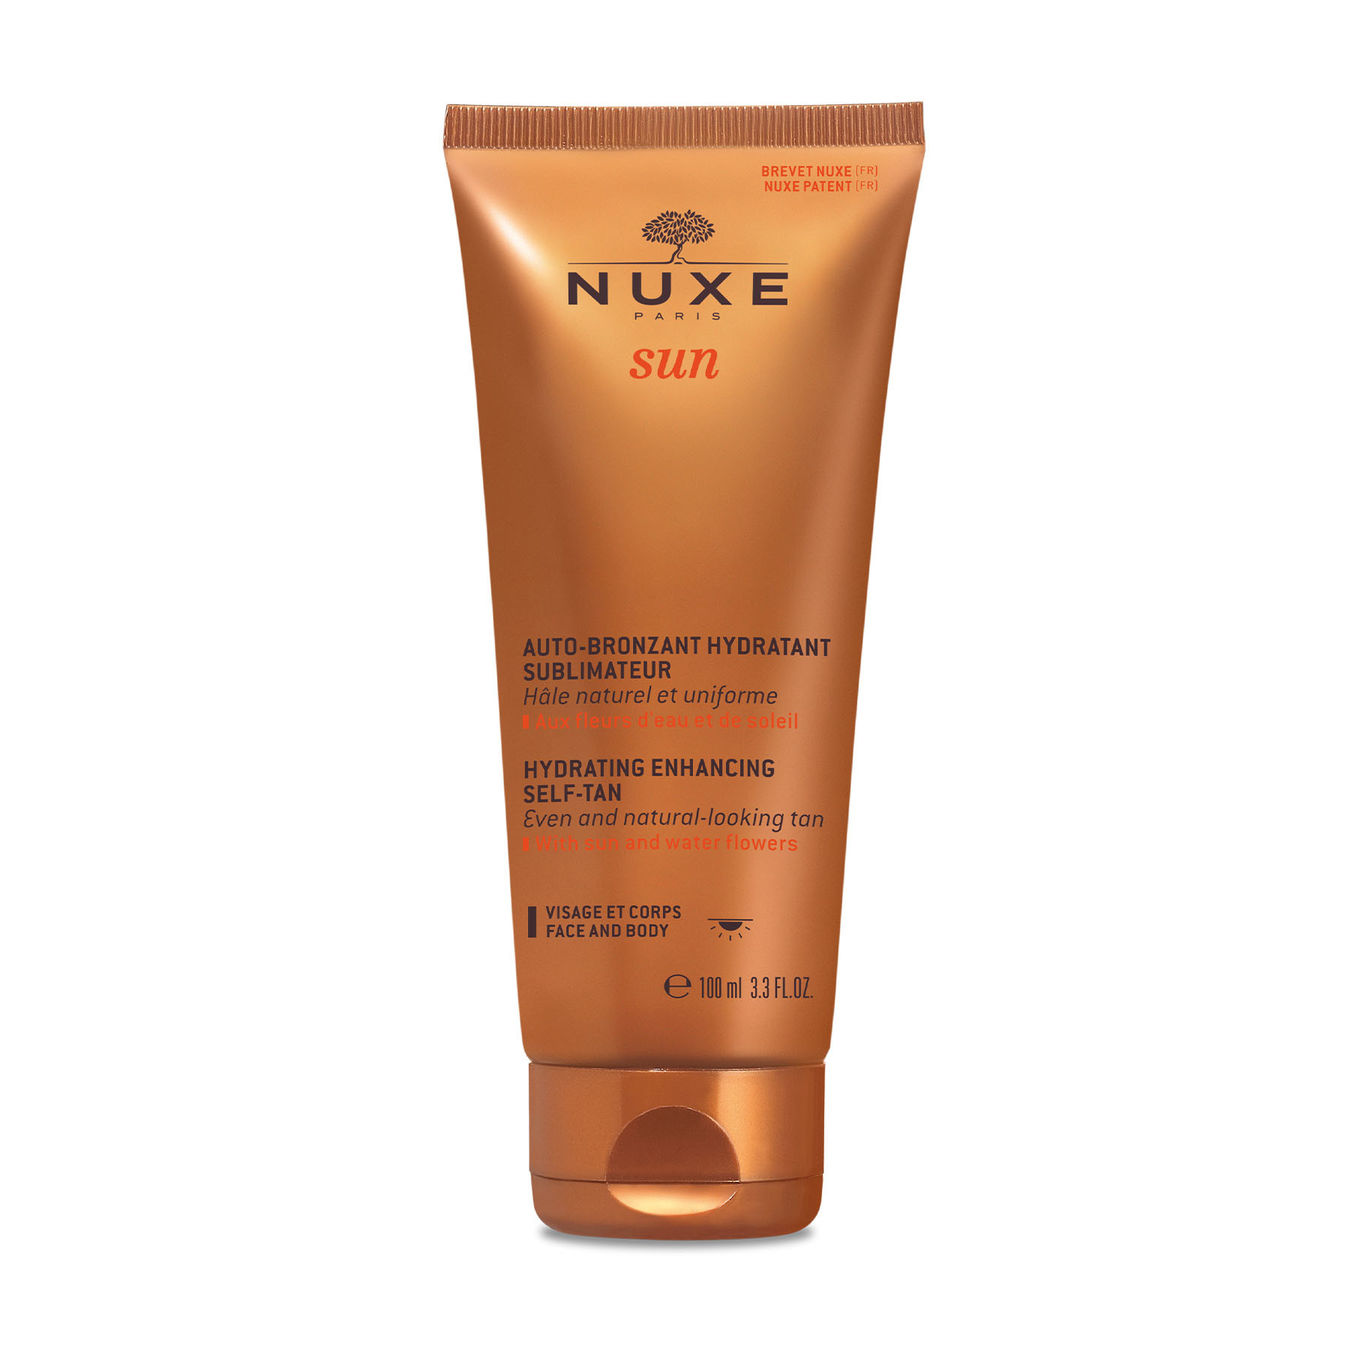 NUXE Sun Auto-Bronzant Hydratant Sublimateur von Nuxe